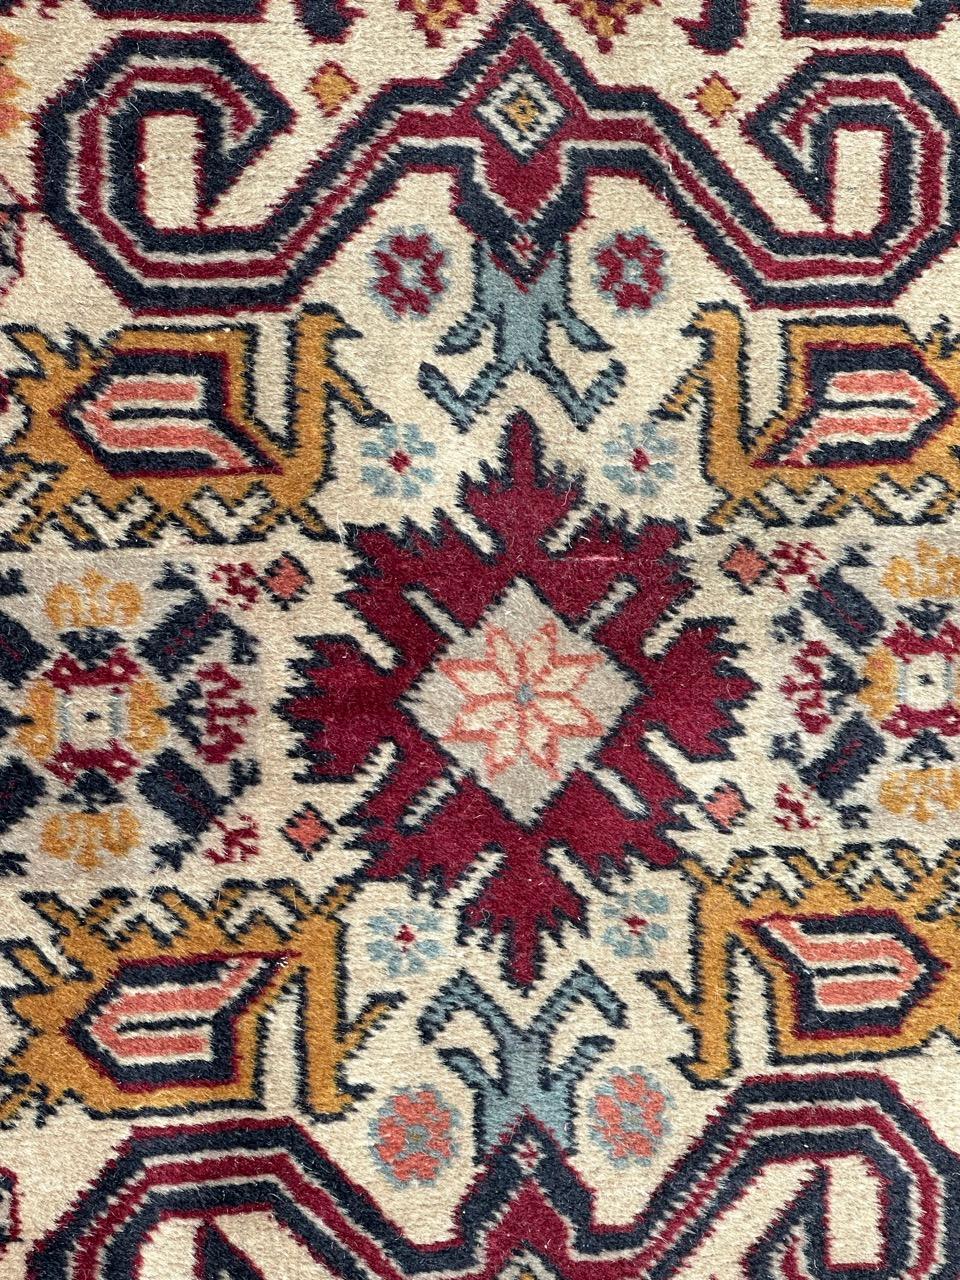 Hübscher aserbaidschanischer Teppich aus der Mitte des Jahrhunderts mit schönem Design der kaukasischen Schirwan-Perepedil-Teppiche und schönen Farben, komplett handgeknüpft mit Wollsamt auf Baumwollbasis.

✨✨✨
